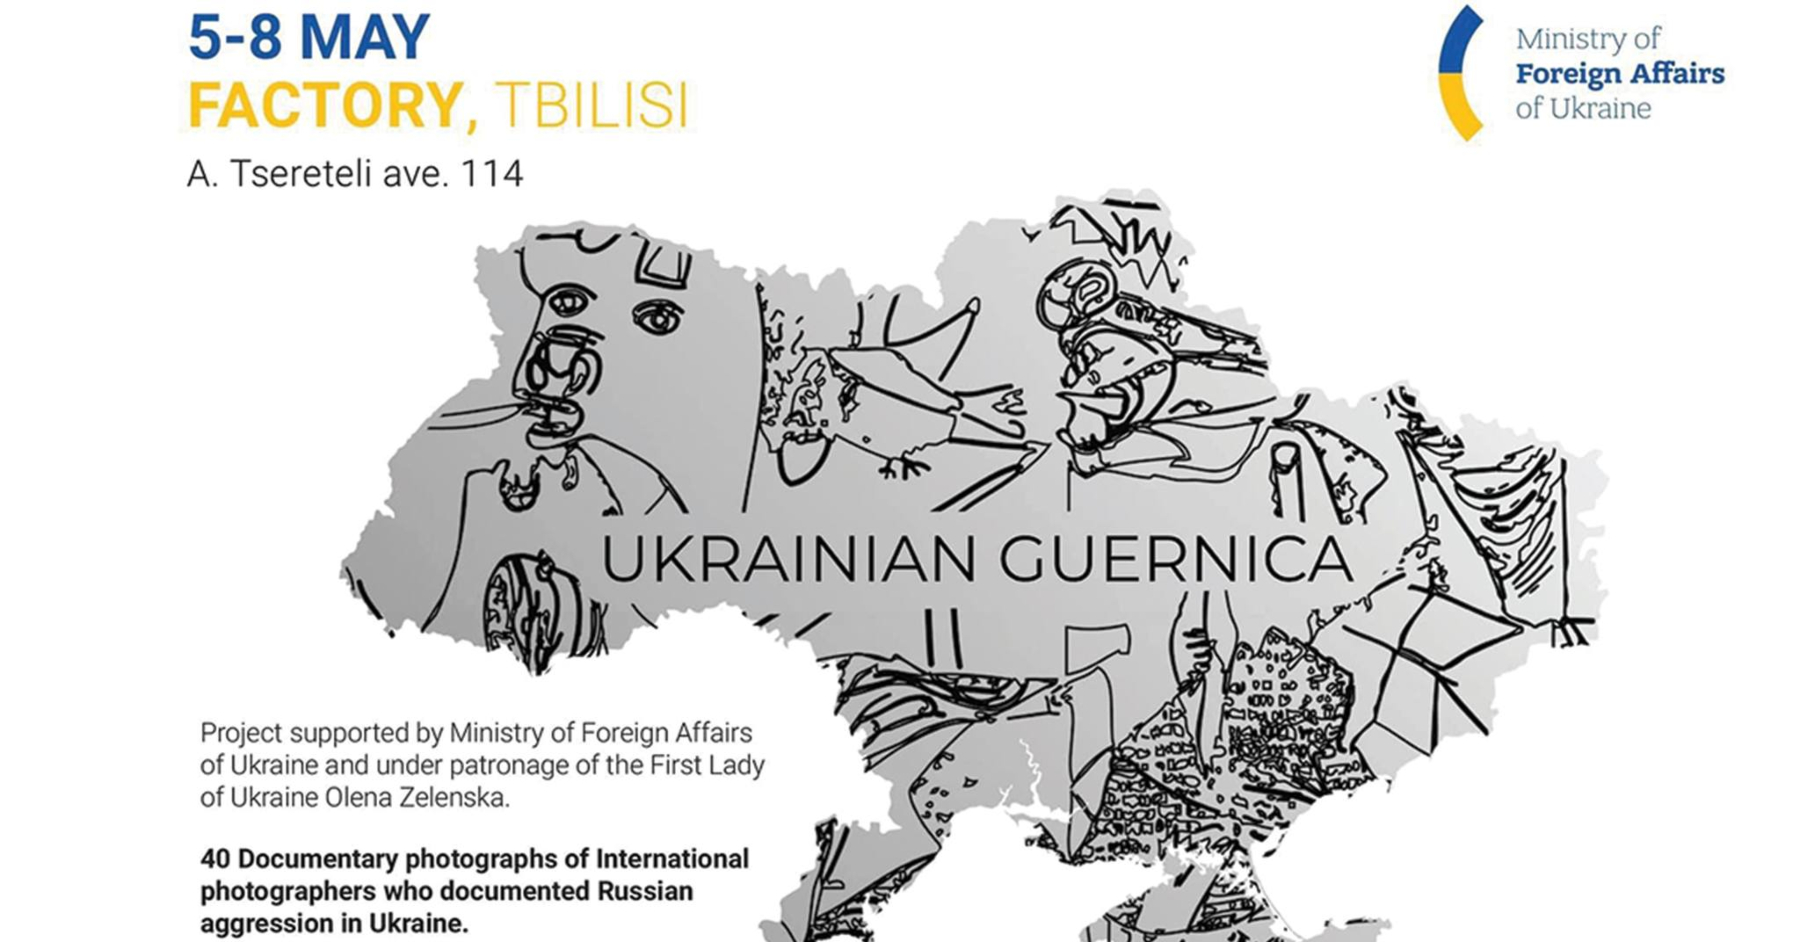 თბილისში საერთაშორისო პროექტი „უკრაინული გერნიკა“ გაიხსნება